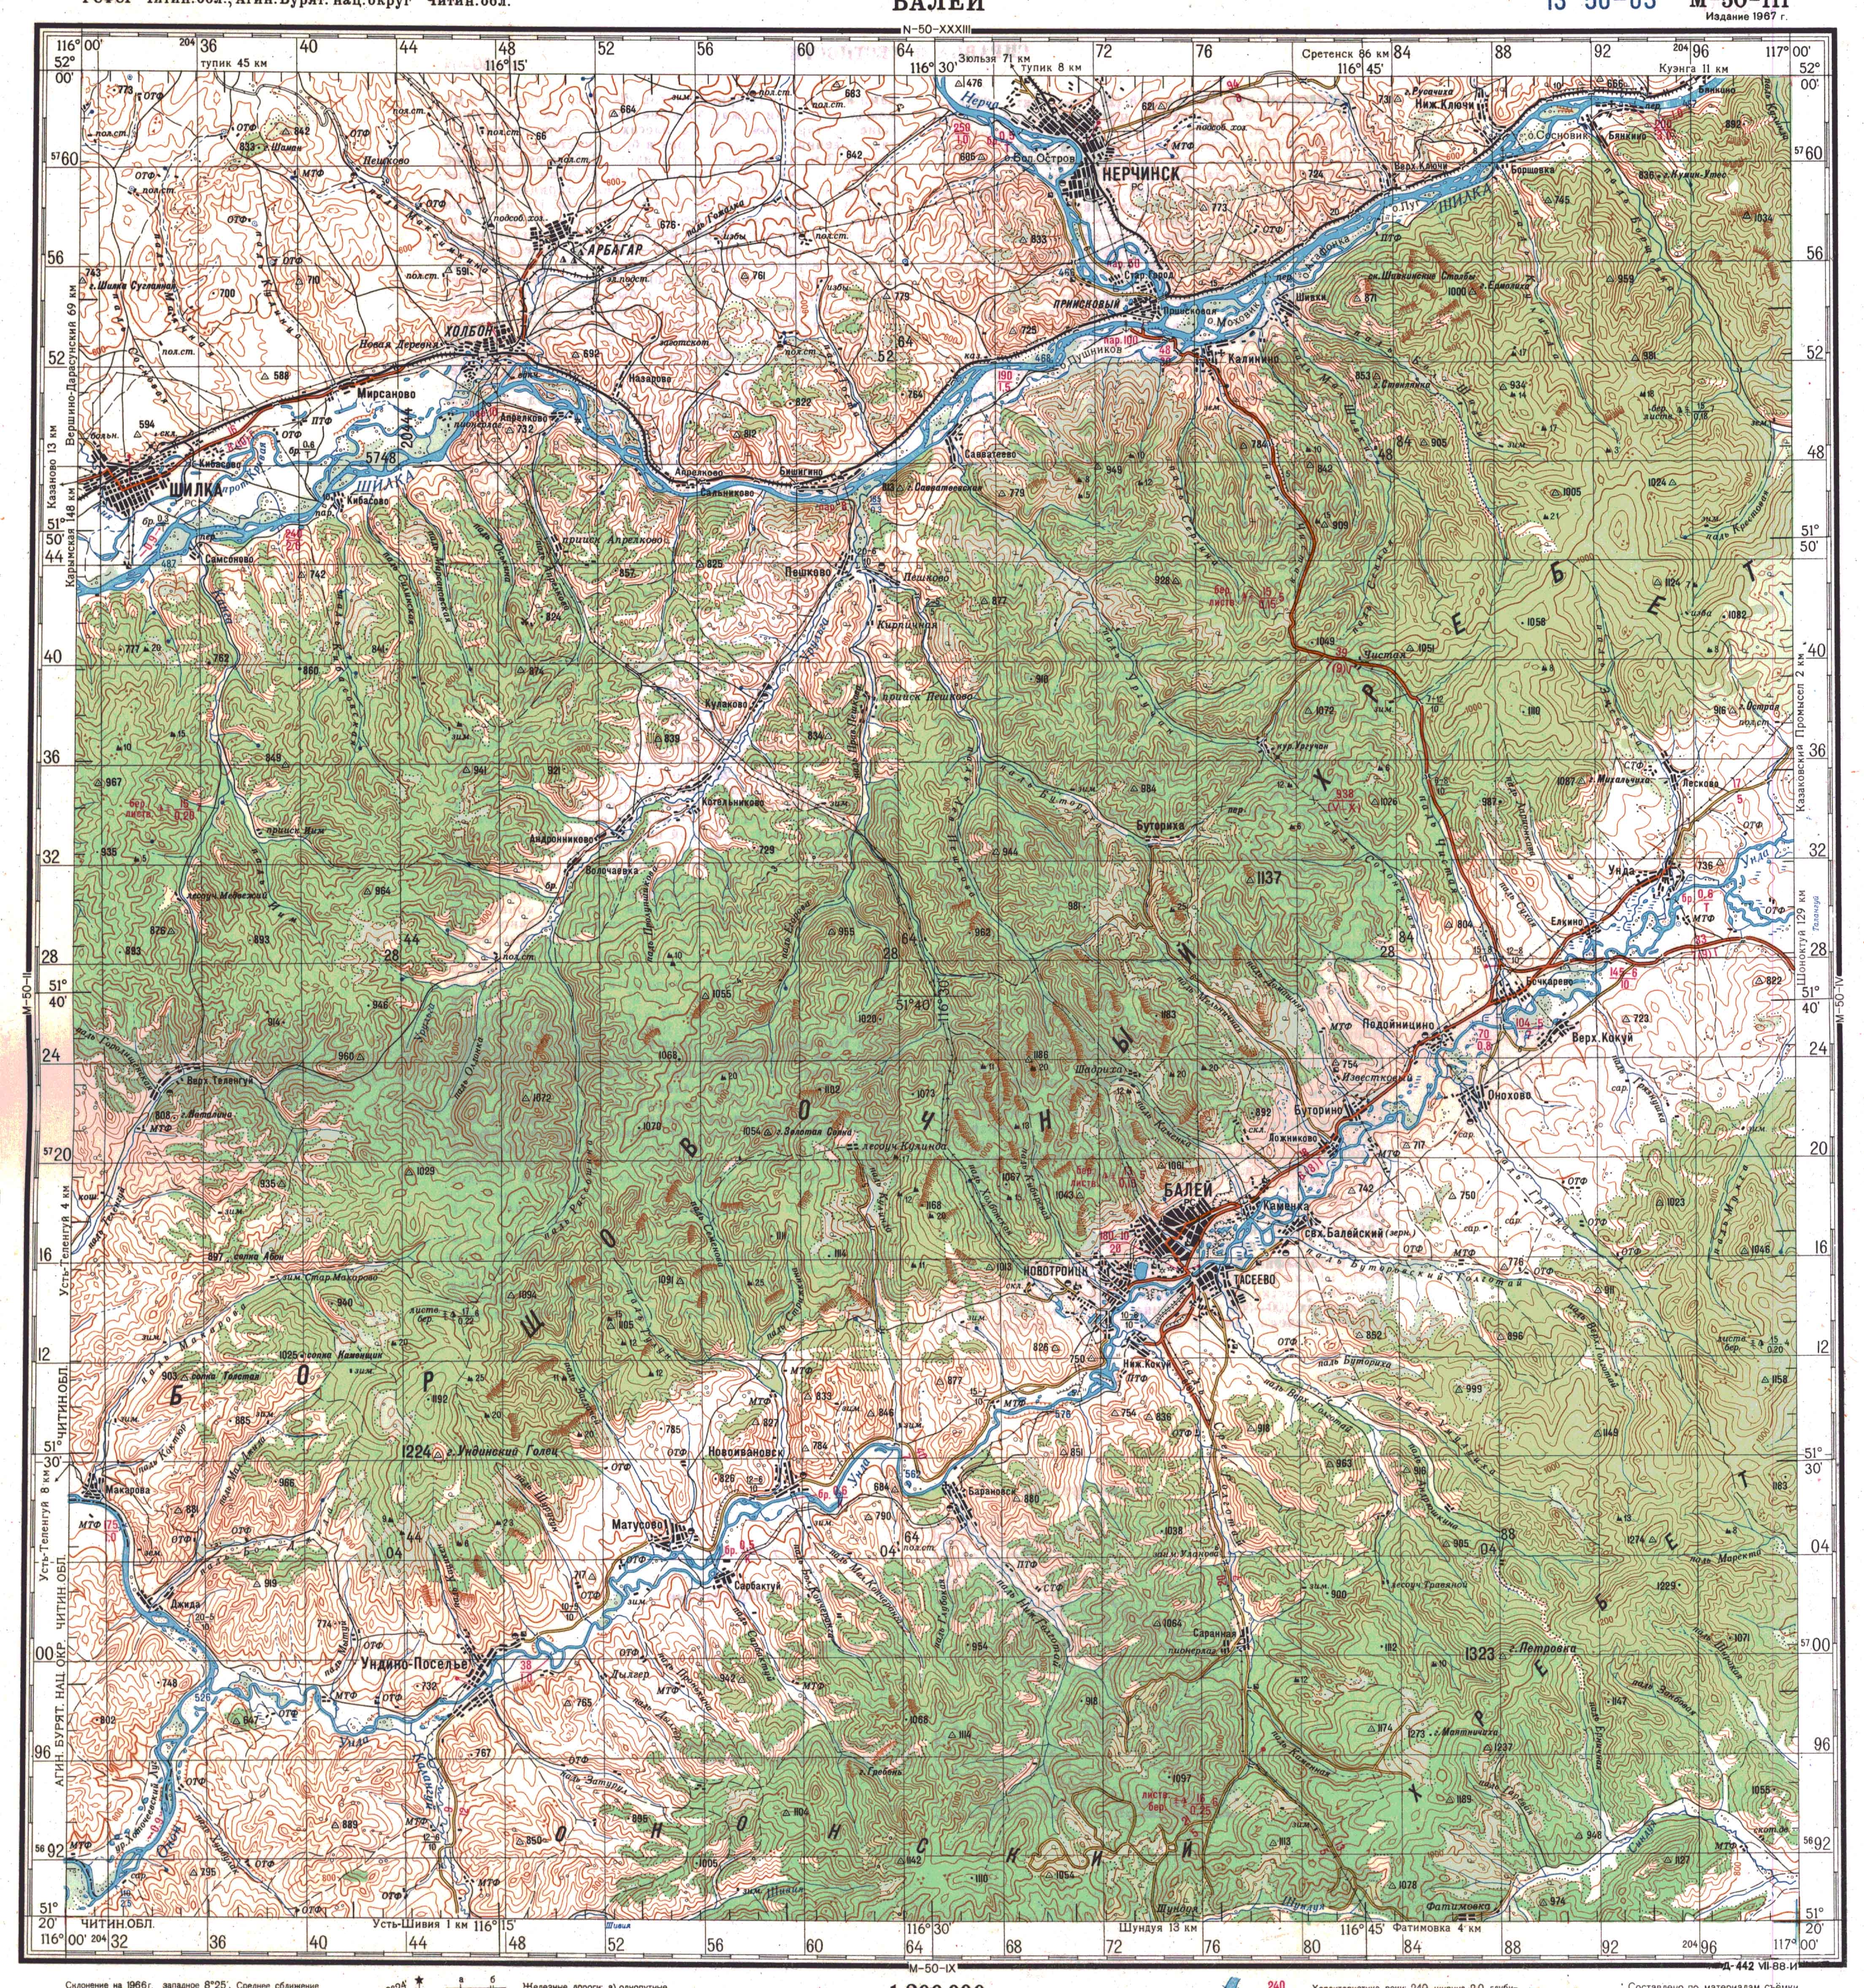 https://maps.vlasenko.net/smtm200/m-50-03.jpg